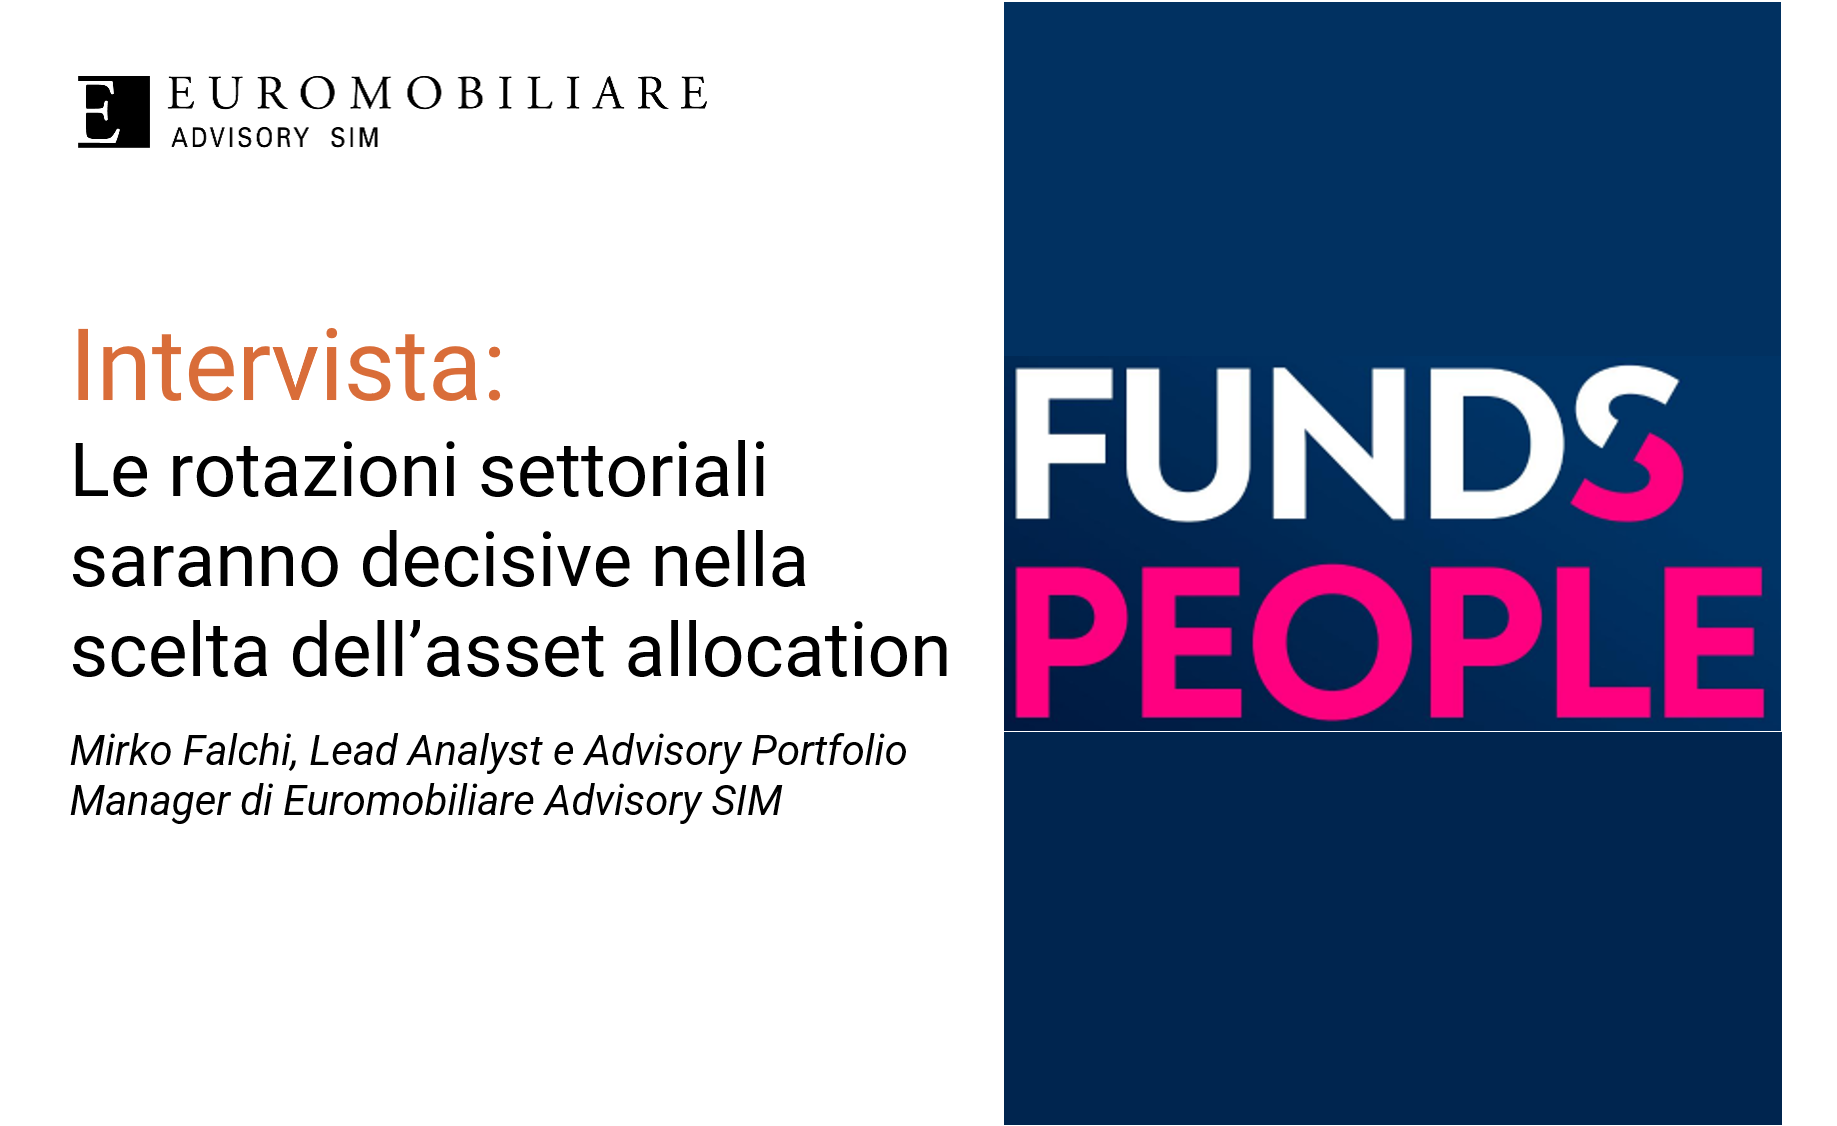 Le rotazioni settoriali saranno decisive nella scelta dell’asset allocation